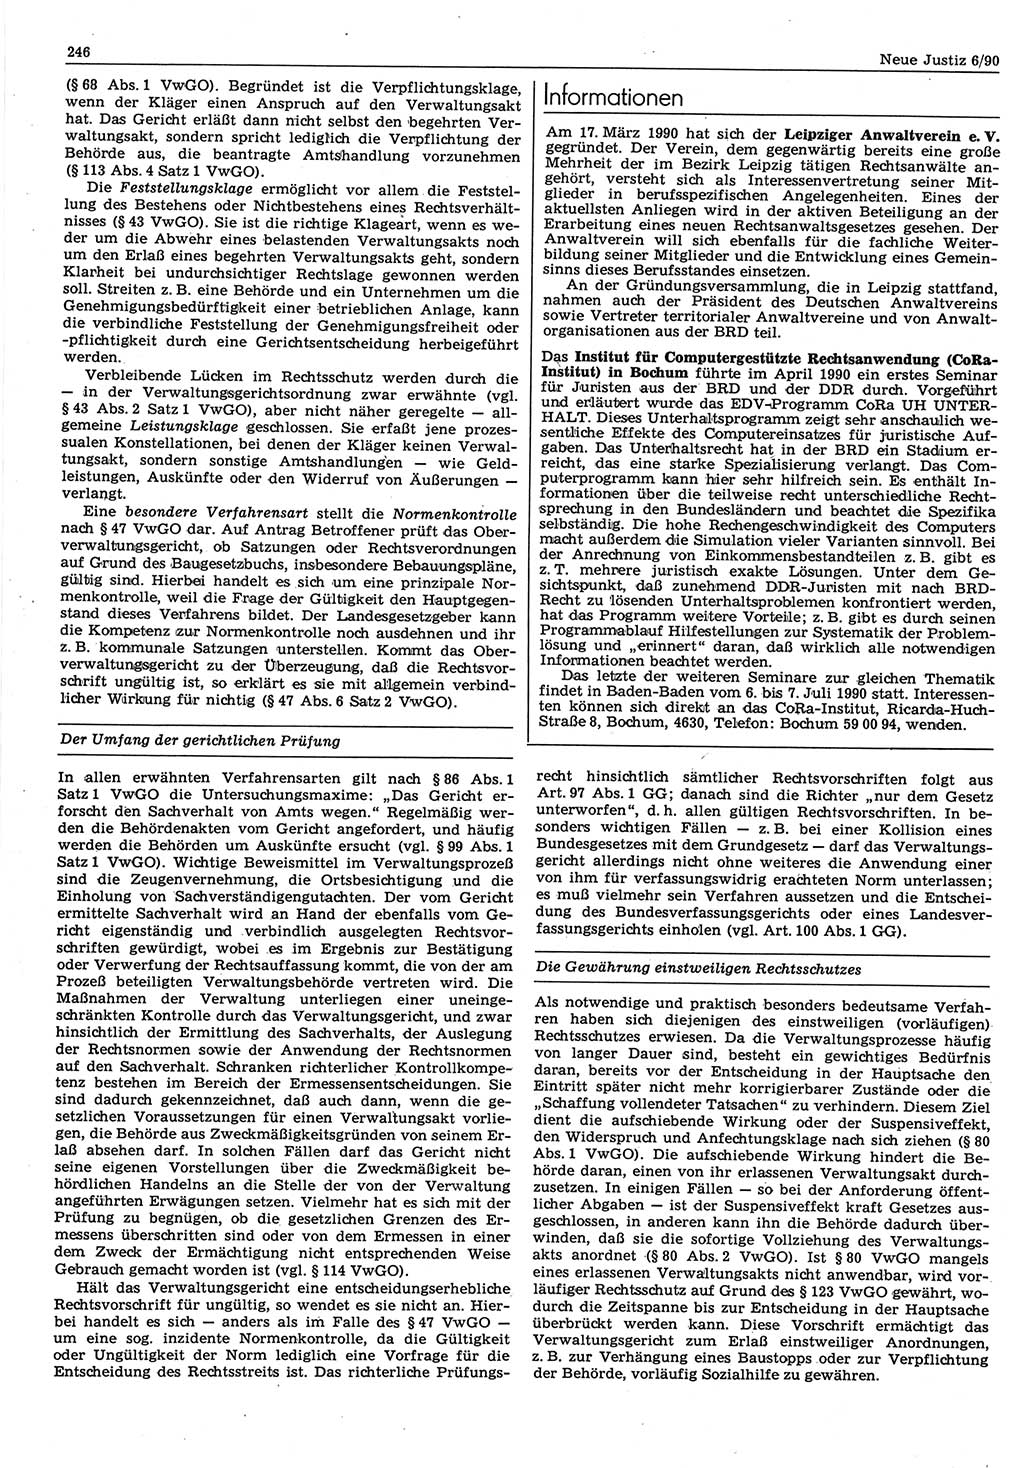 Neue Justiz (NJ), Zeitschrift für Rechtsetzung und Rechtsanwendung [Deutsche Demokratische Republik (DDR)], 44. Jahrgang 1990, Seite 246 (NJ DDR 1990, S. 246)